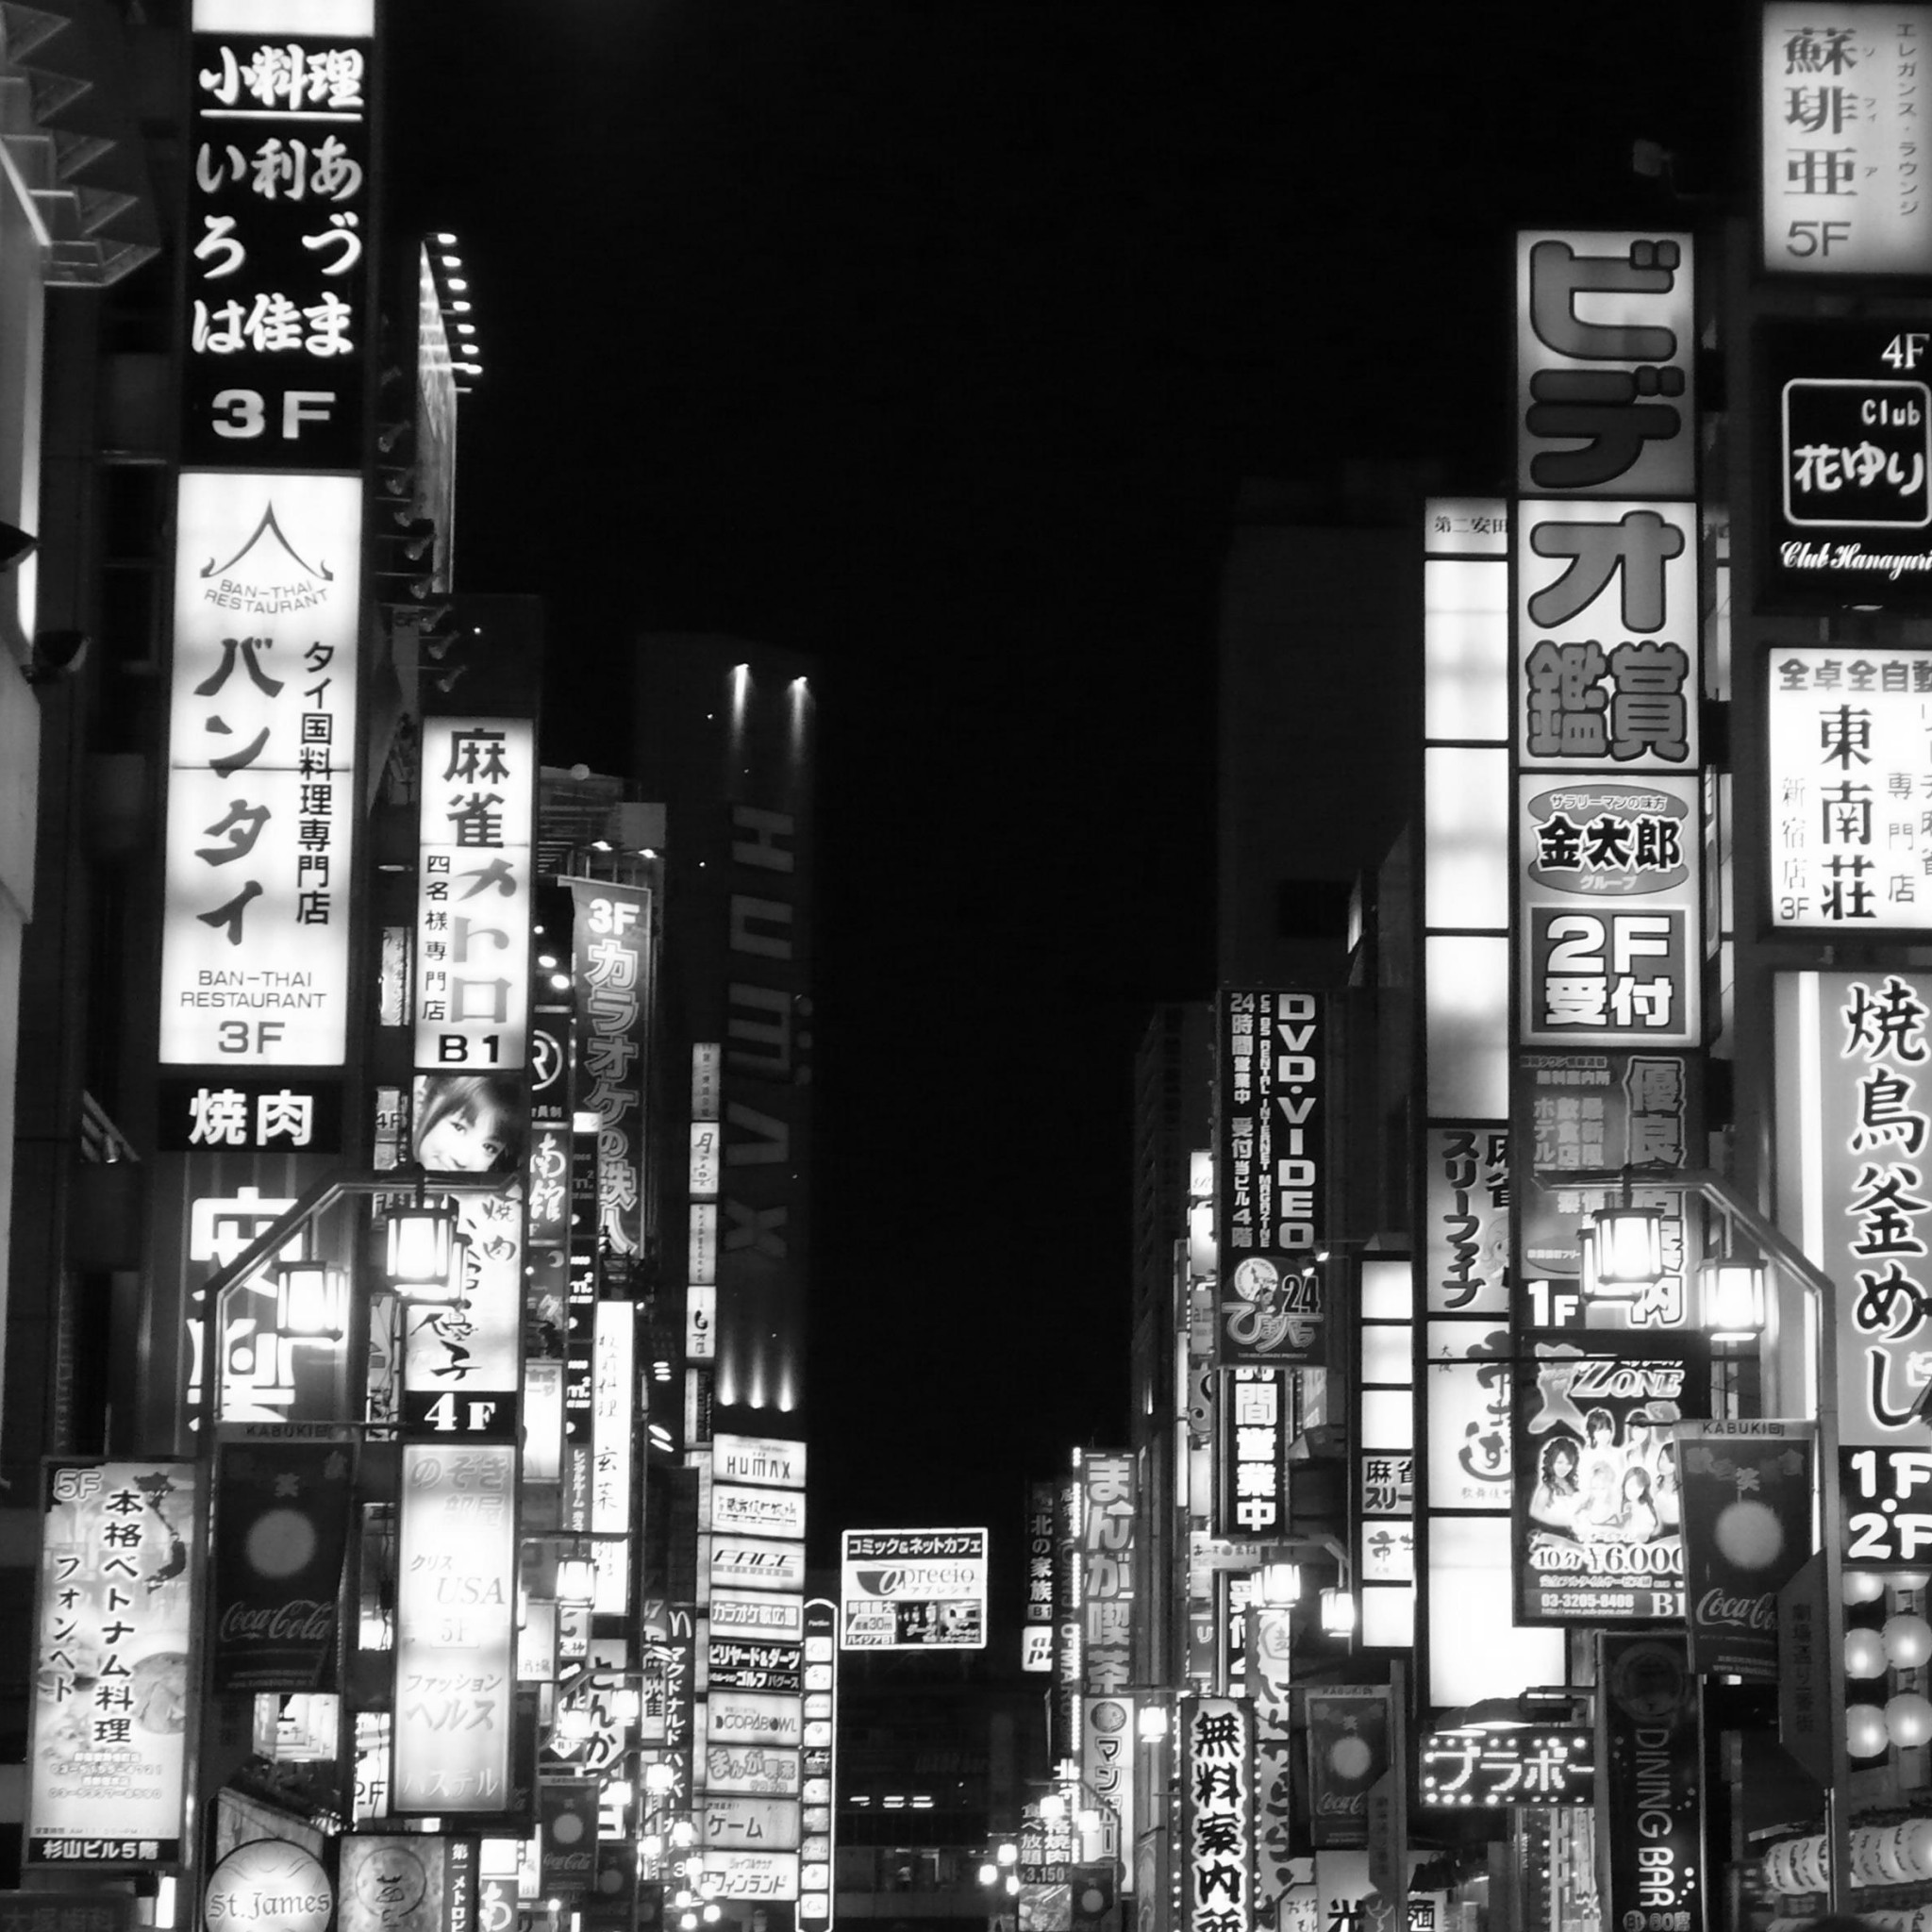 最も人気のある 東京 夜景 壁紙 スマホ 壁紙 4k スマホ 壁紙 東京 夜景 壁紙